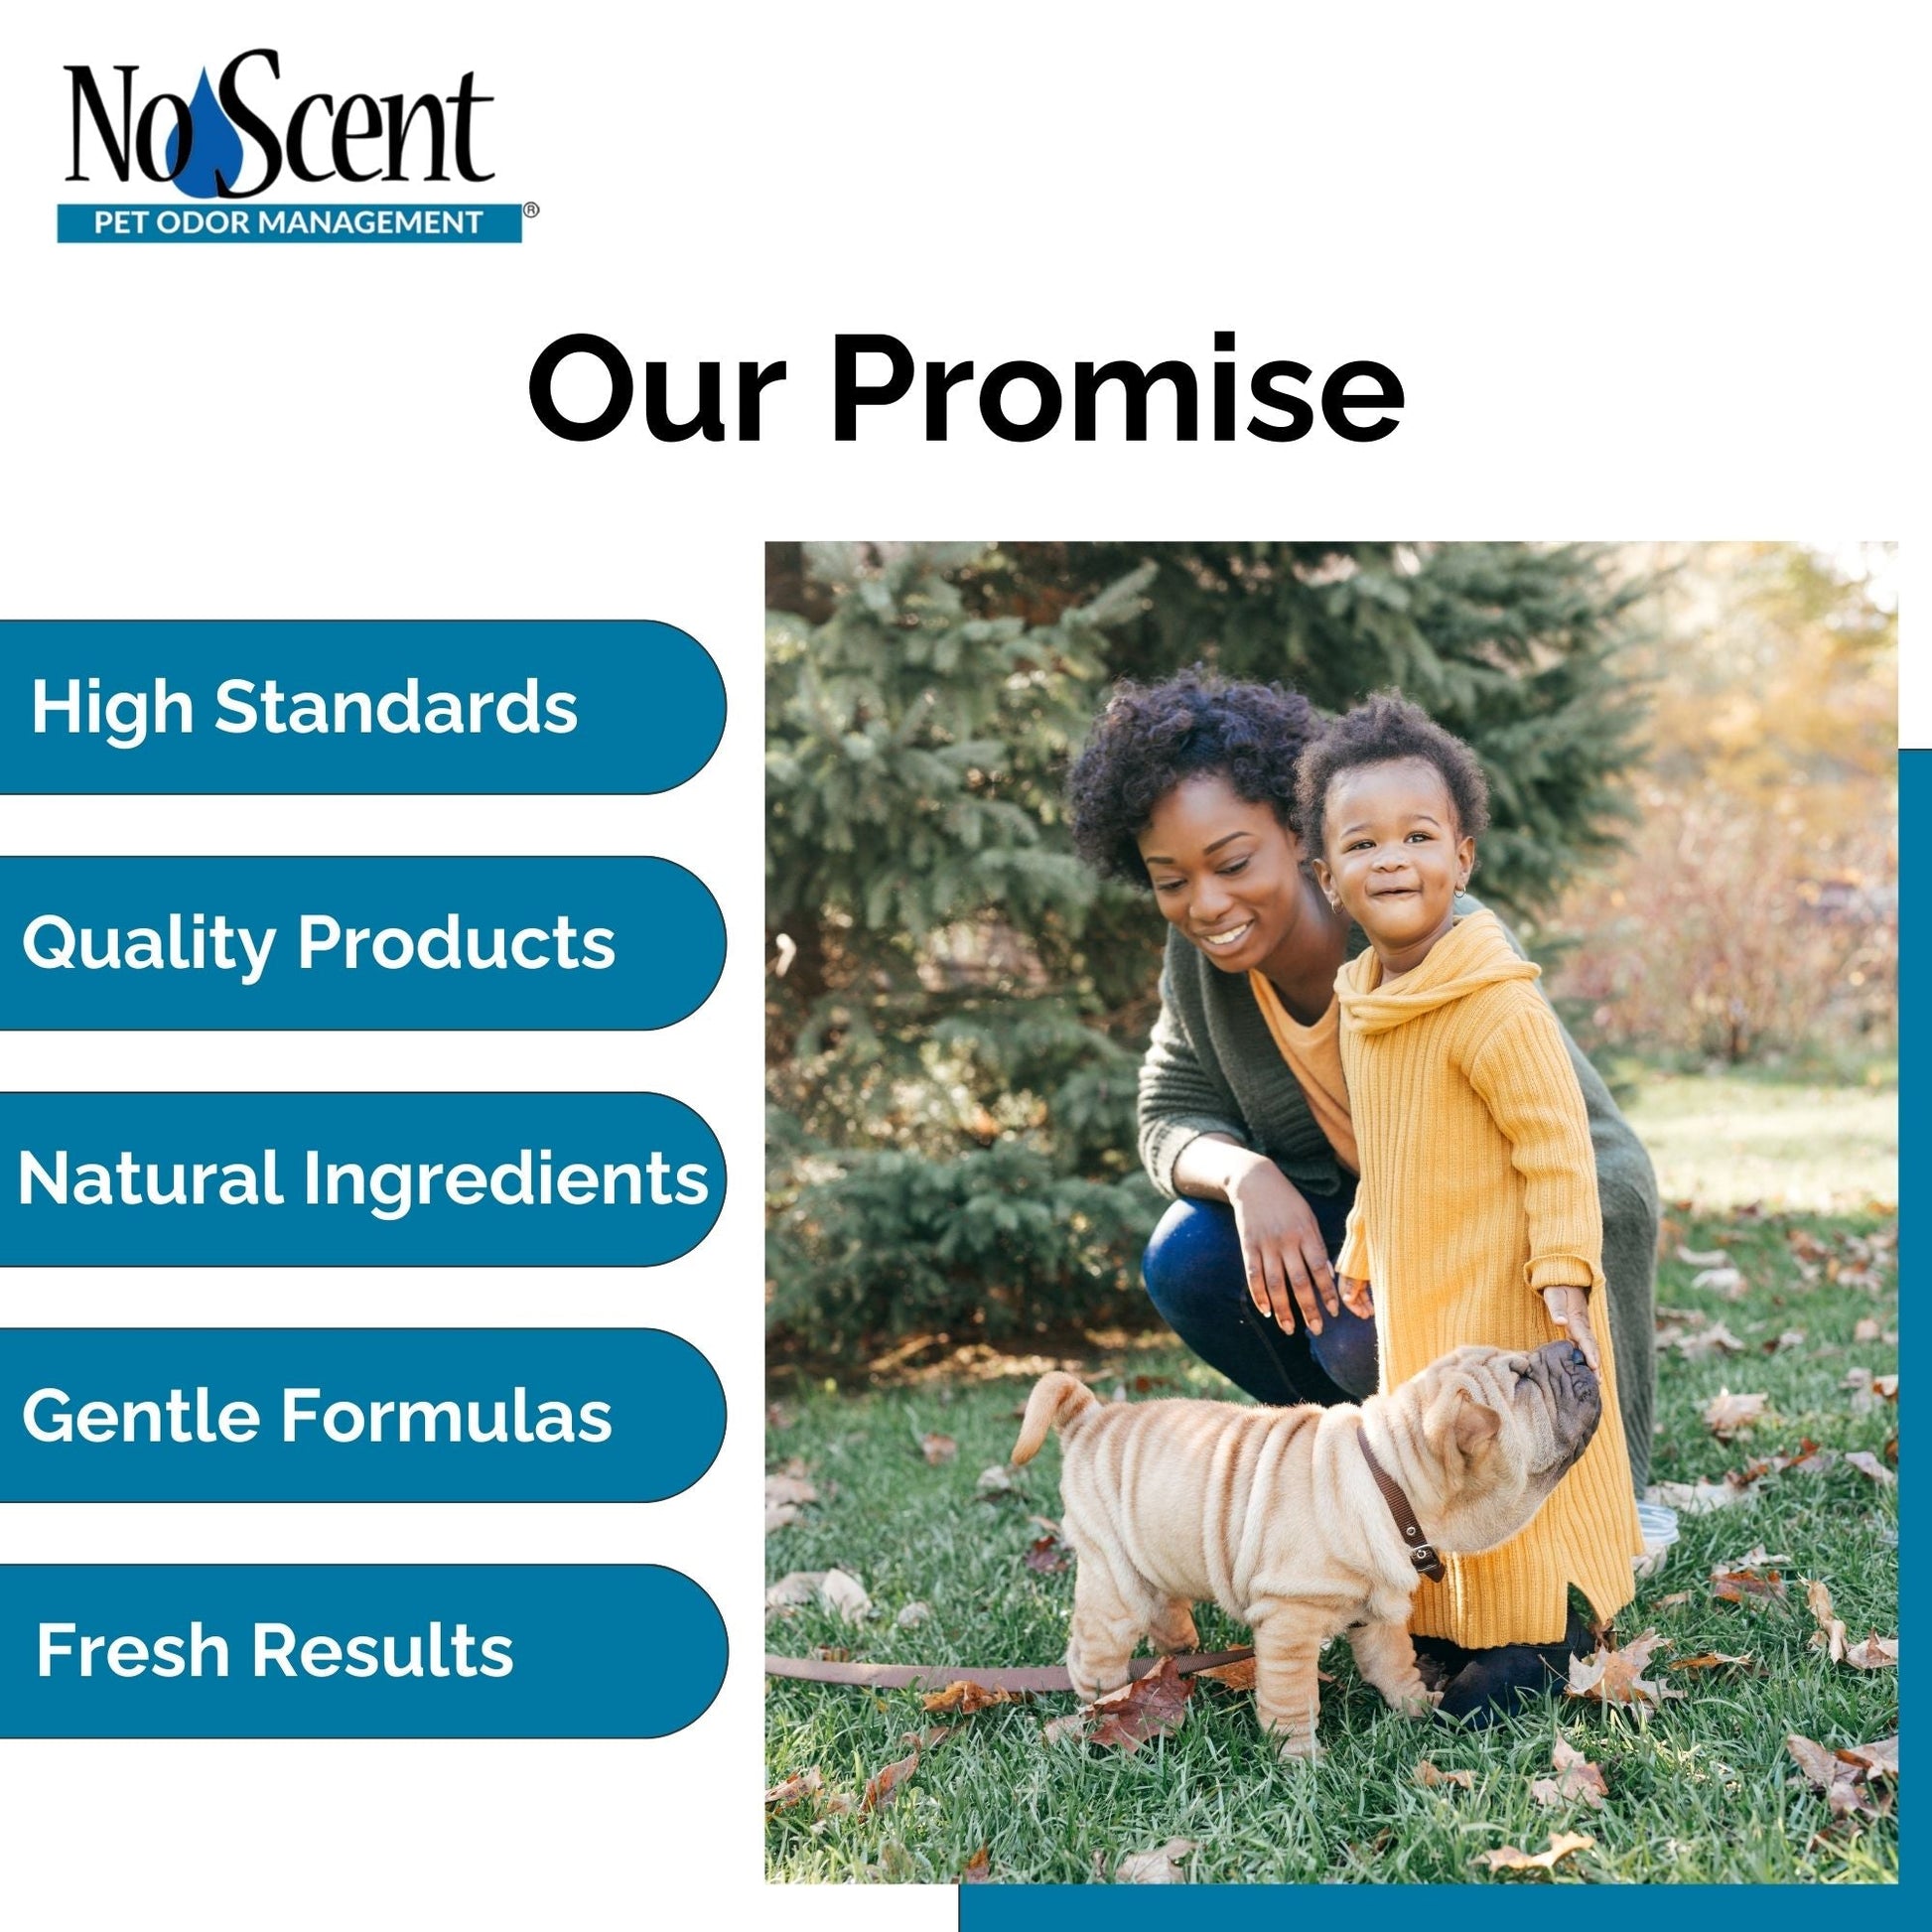 No Scent Anal Gland Express & Skunk Spray Pet Odor Eliminator & Cleaner - MindEyes USA